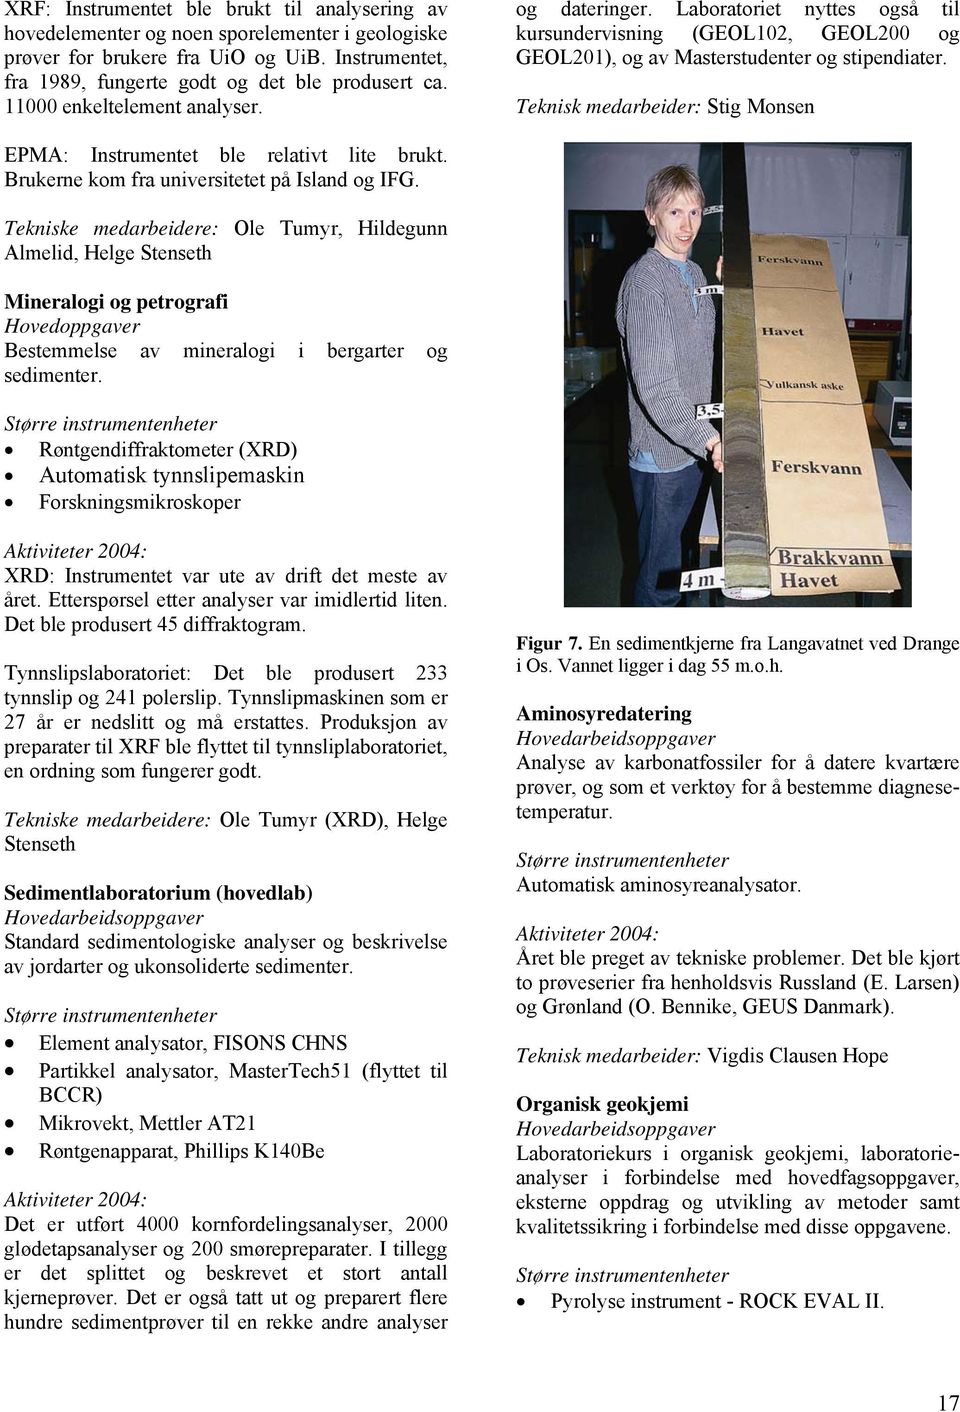 Teknisk medarbeider: Stig Monsen EPMA: Instrumentet ble relativt lite brukt. Brukerne kom fra universitetet på Island og IFG.